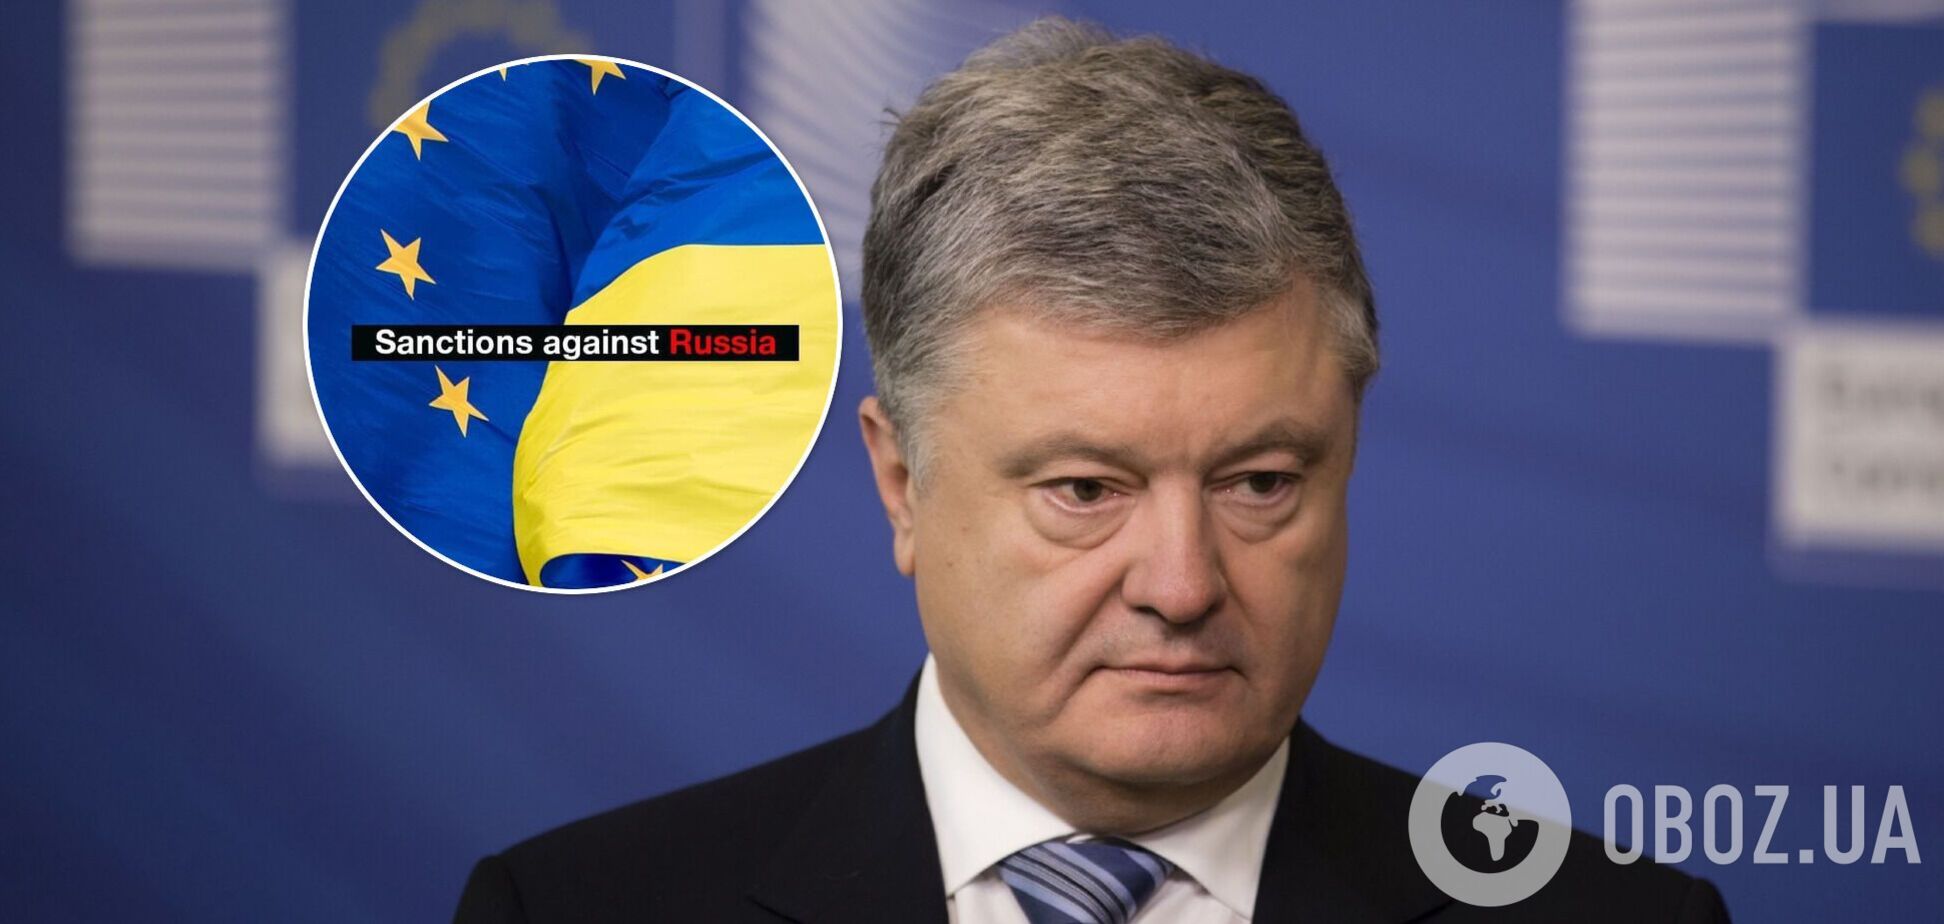 Власть должна усиливать санкционный фронт и повышать цену для России за преступления против Украины, – Порошенко